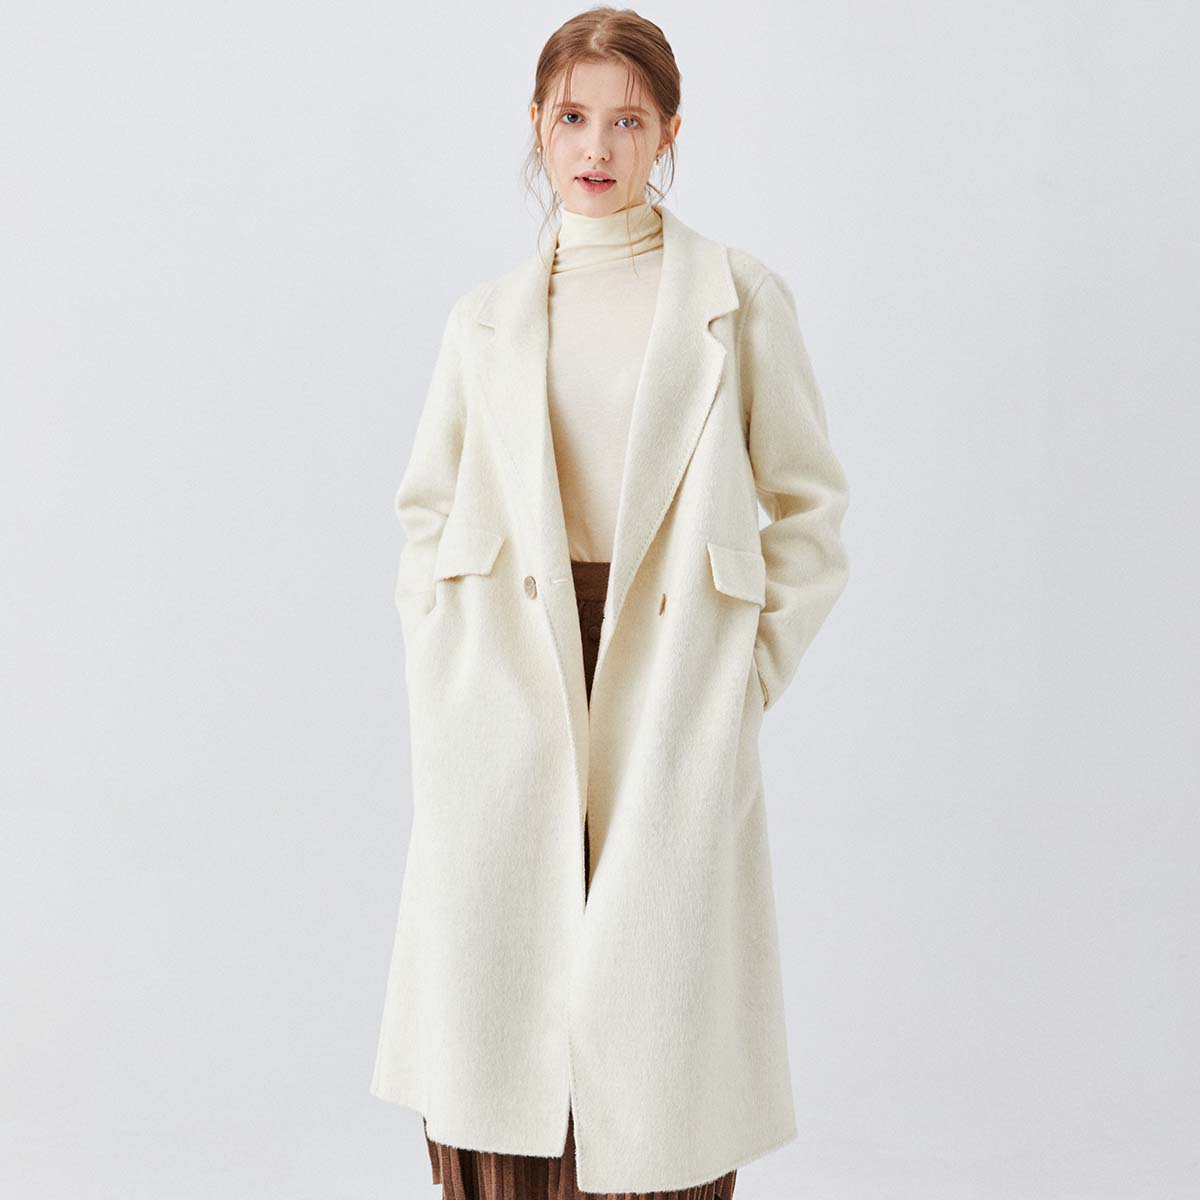 Winter Wool Coat